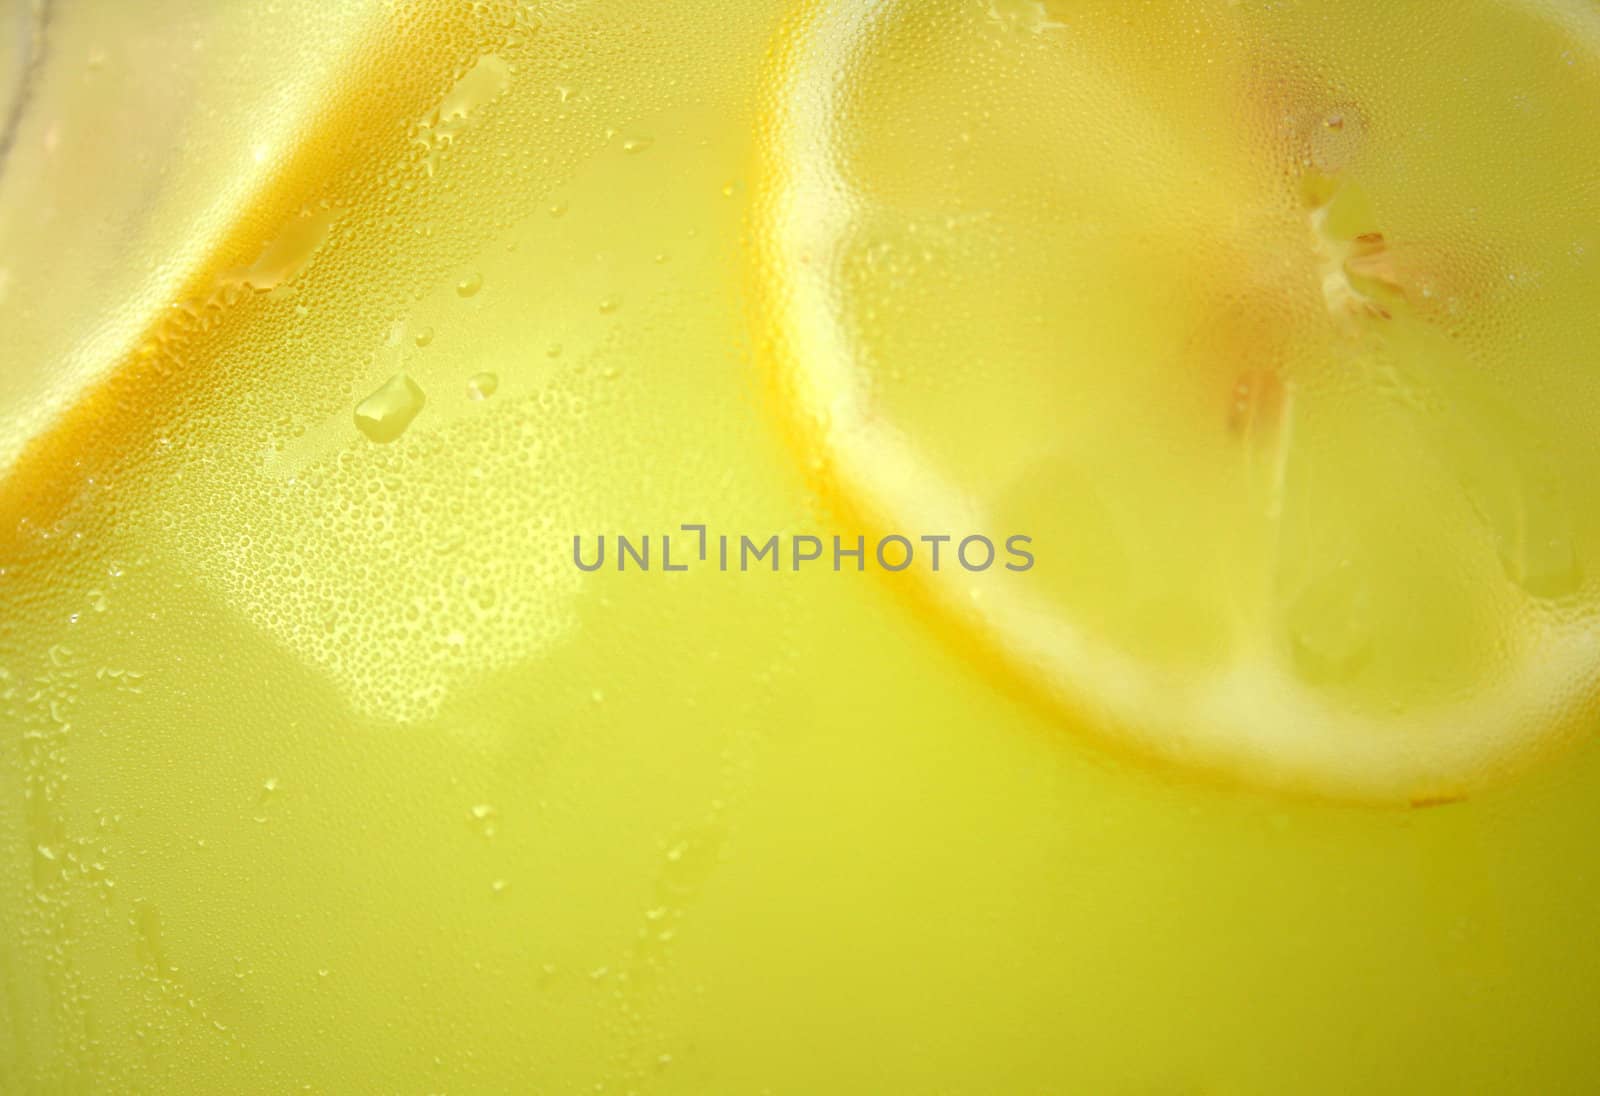 Lemonade Background by thephotoguy